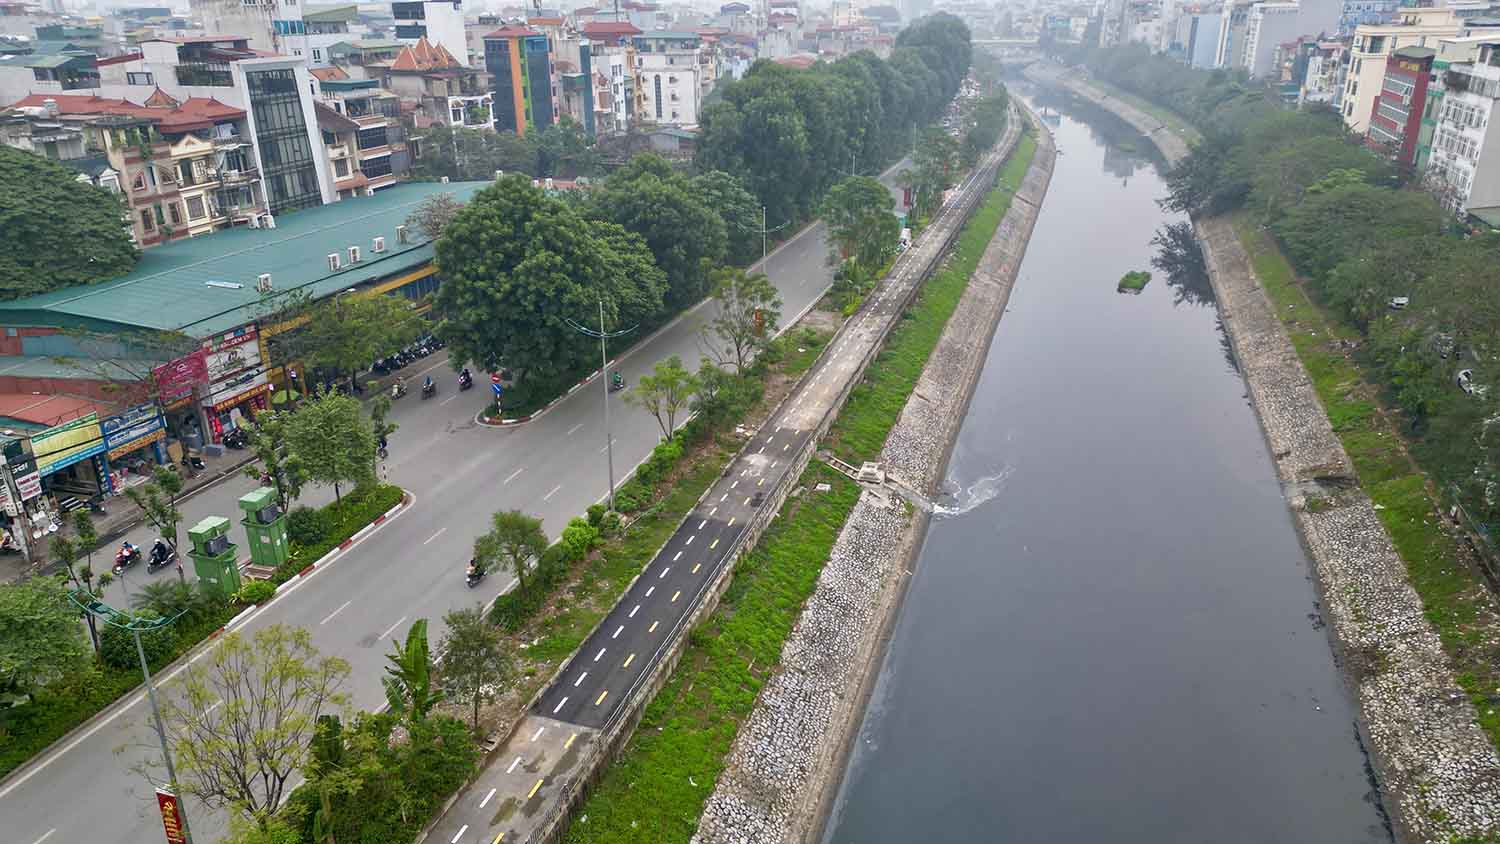 Dự án không chỉ có ý nghĩa đối với việc đạt chỉ tiêu xử lý nước thải, phục vụ gần một triệu dân 6 quận và huyện Thanh Trì mà còn góp phần làm sạch các con sông quan trọng của Thủ đô như Tô Lịch, Lừ, Sét. Ảnh: H.Chánh